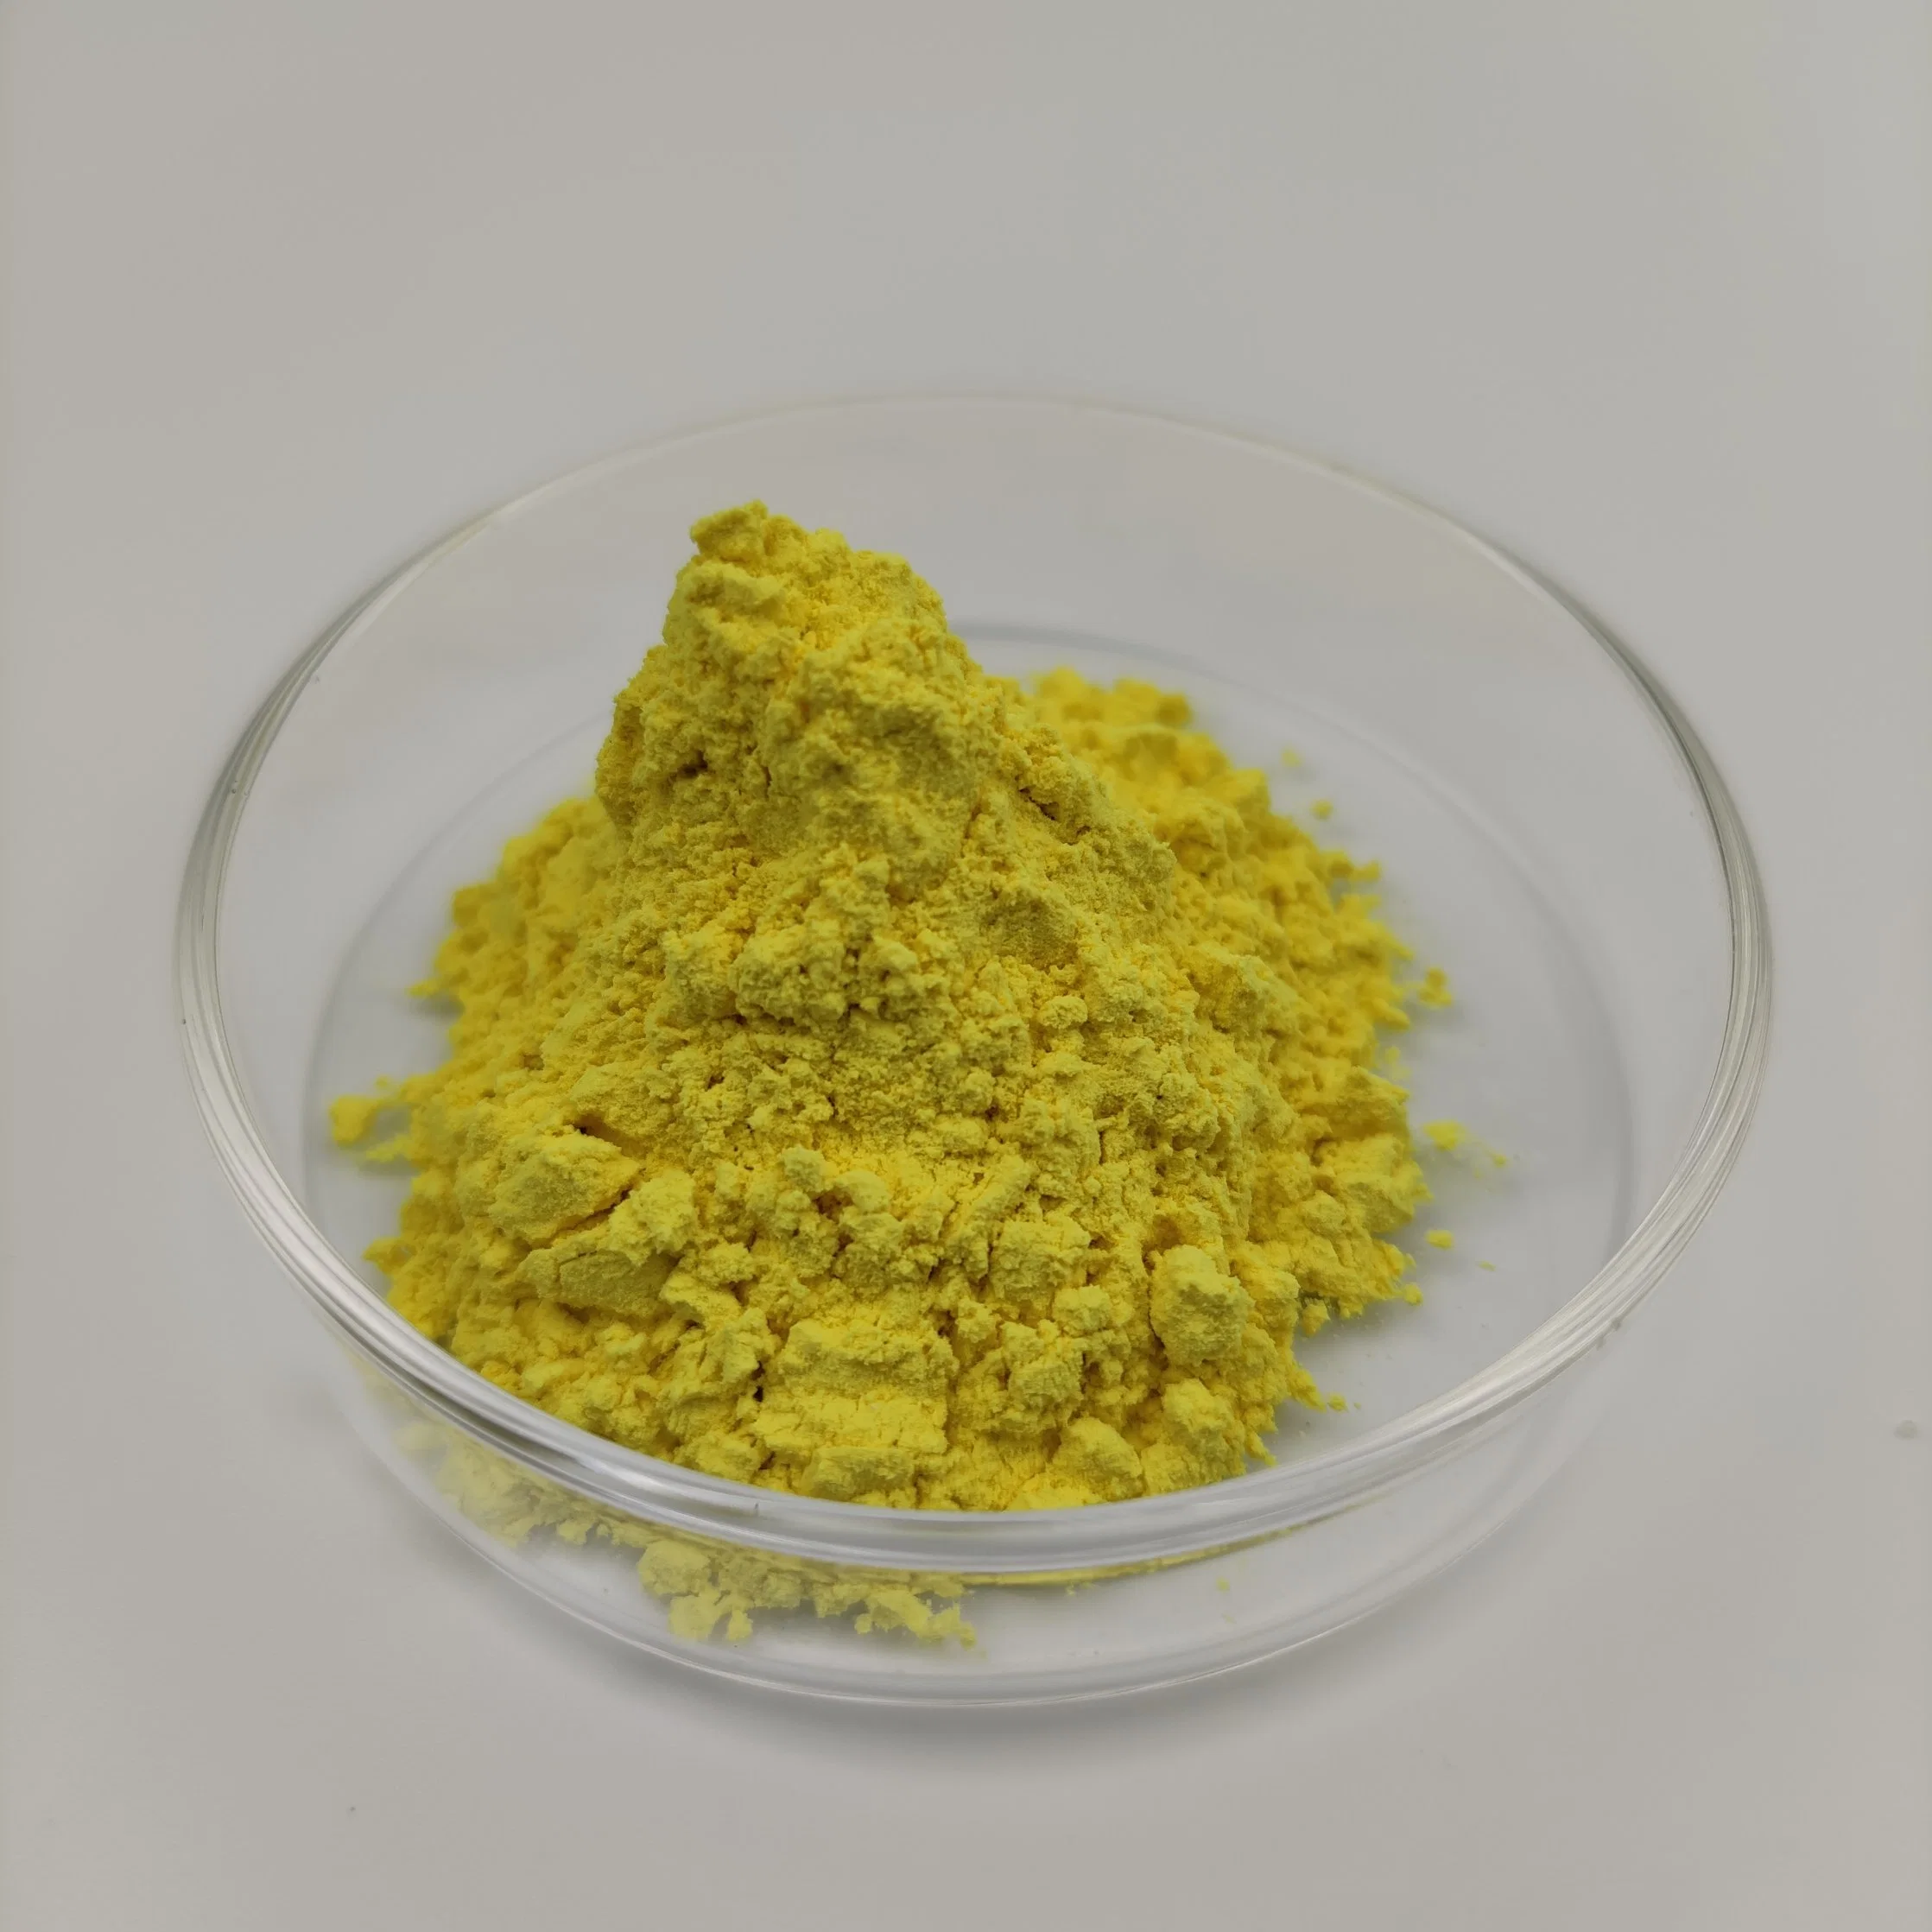 Fornecimento direto das fábricas de medicamentos veterinários: Matérias-primas de alta qualidade de oxitetraciclina amarela, pureza de 99%, em pó